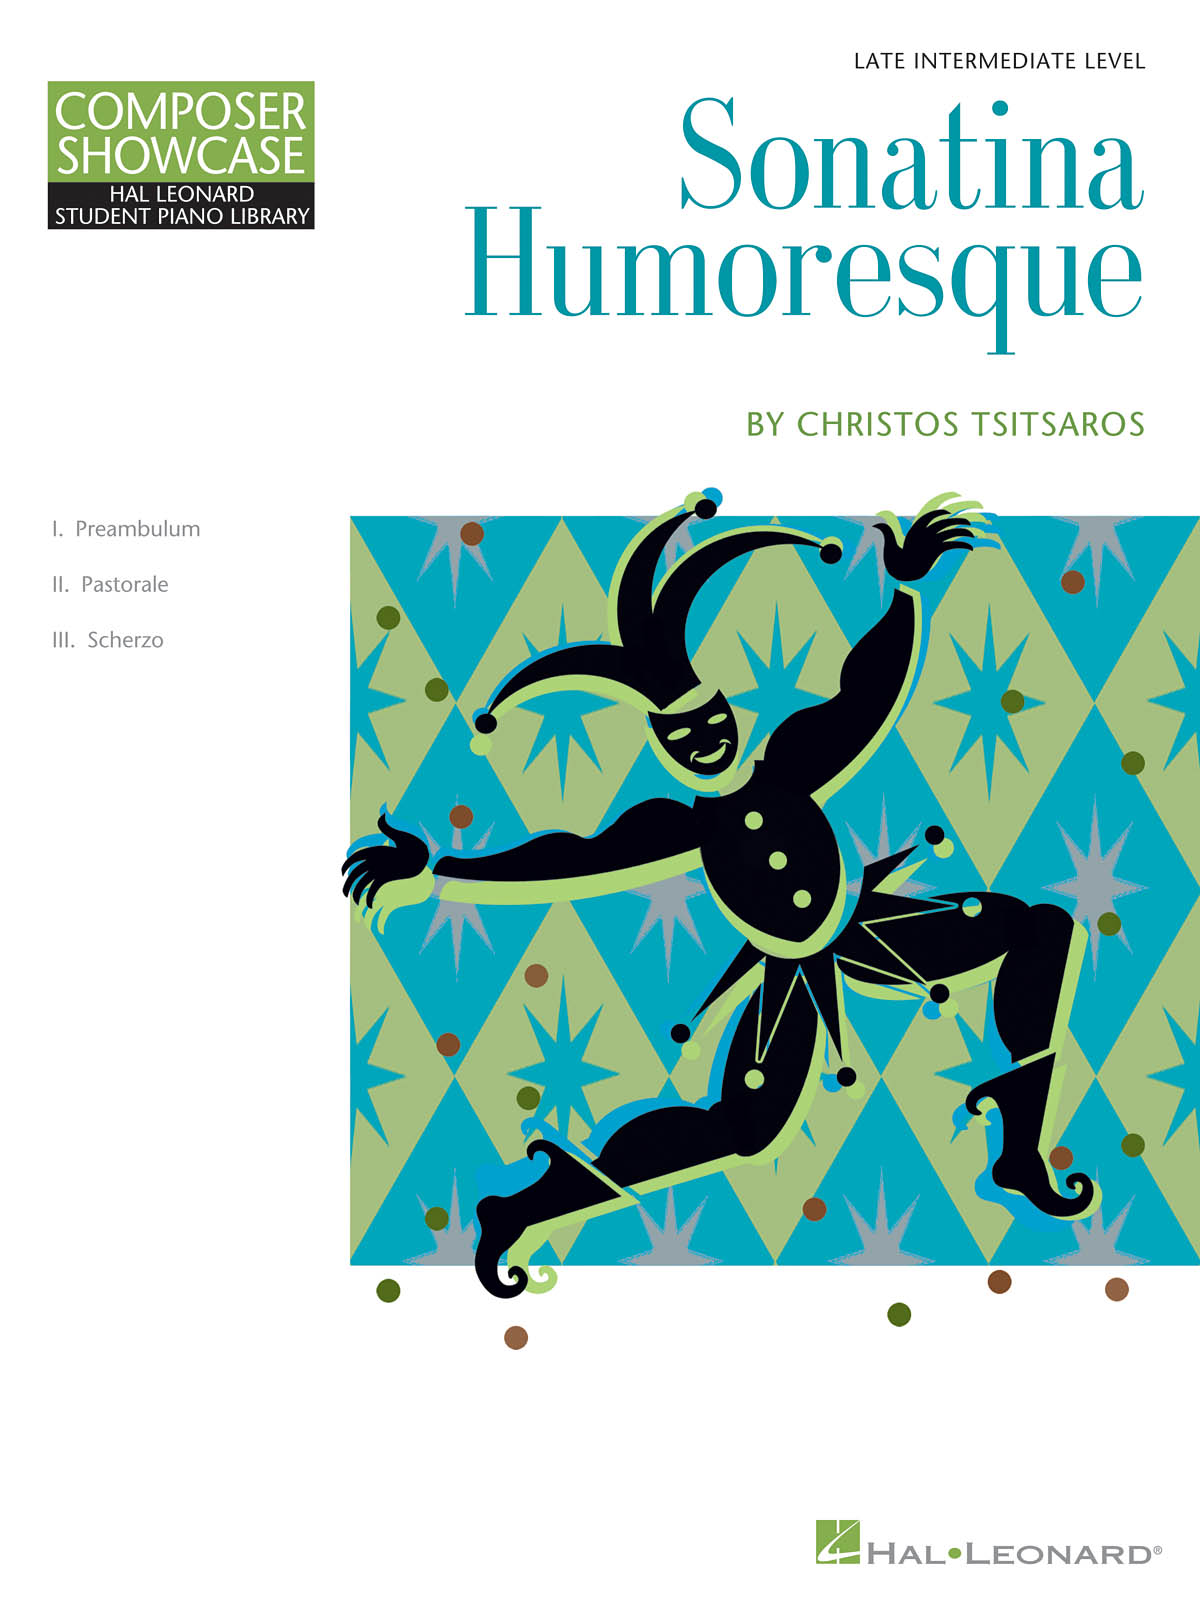 Sonatina Humoresque(Hal Leonard Student Piano Library Composer Showcase Late Intermediate)